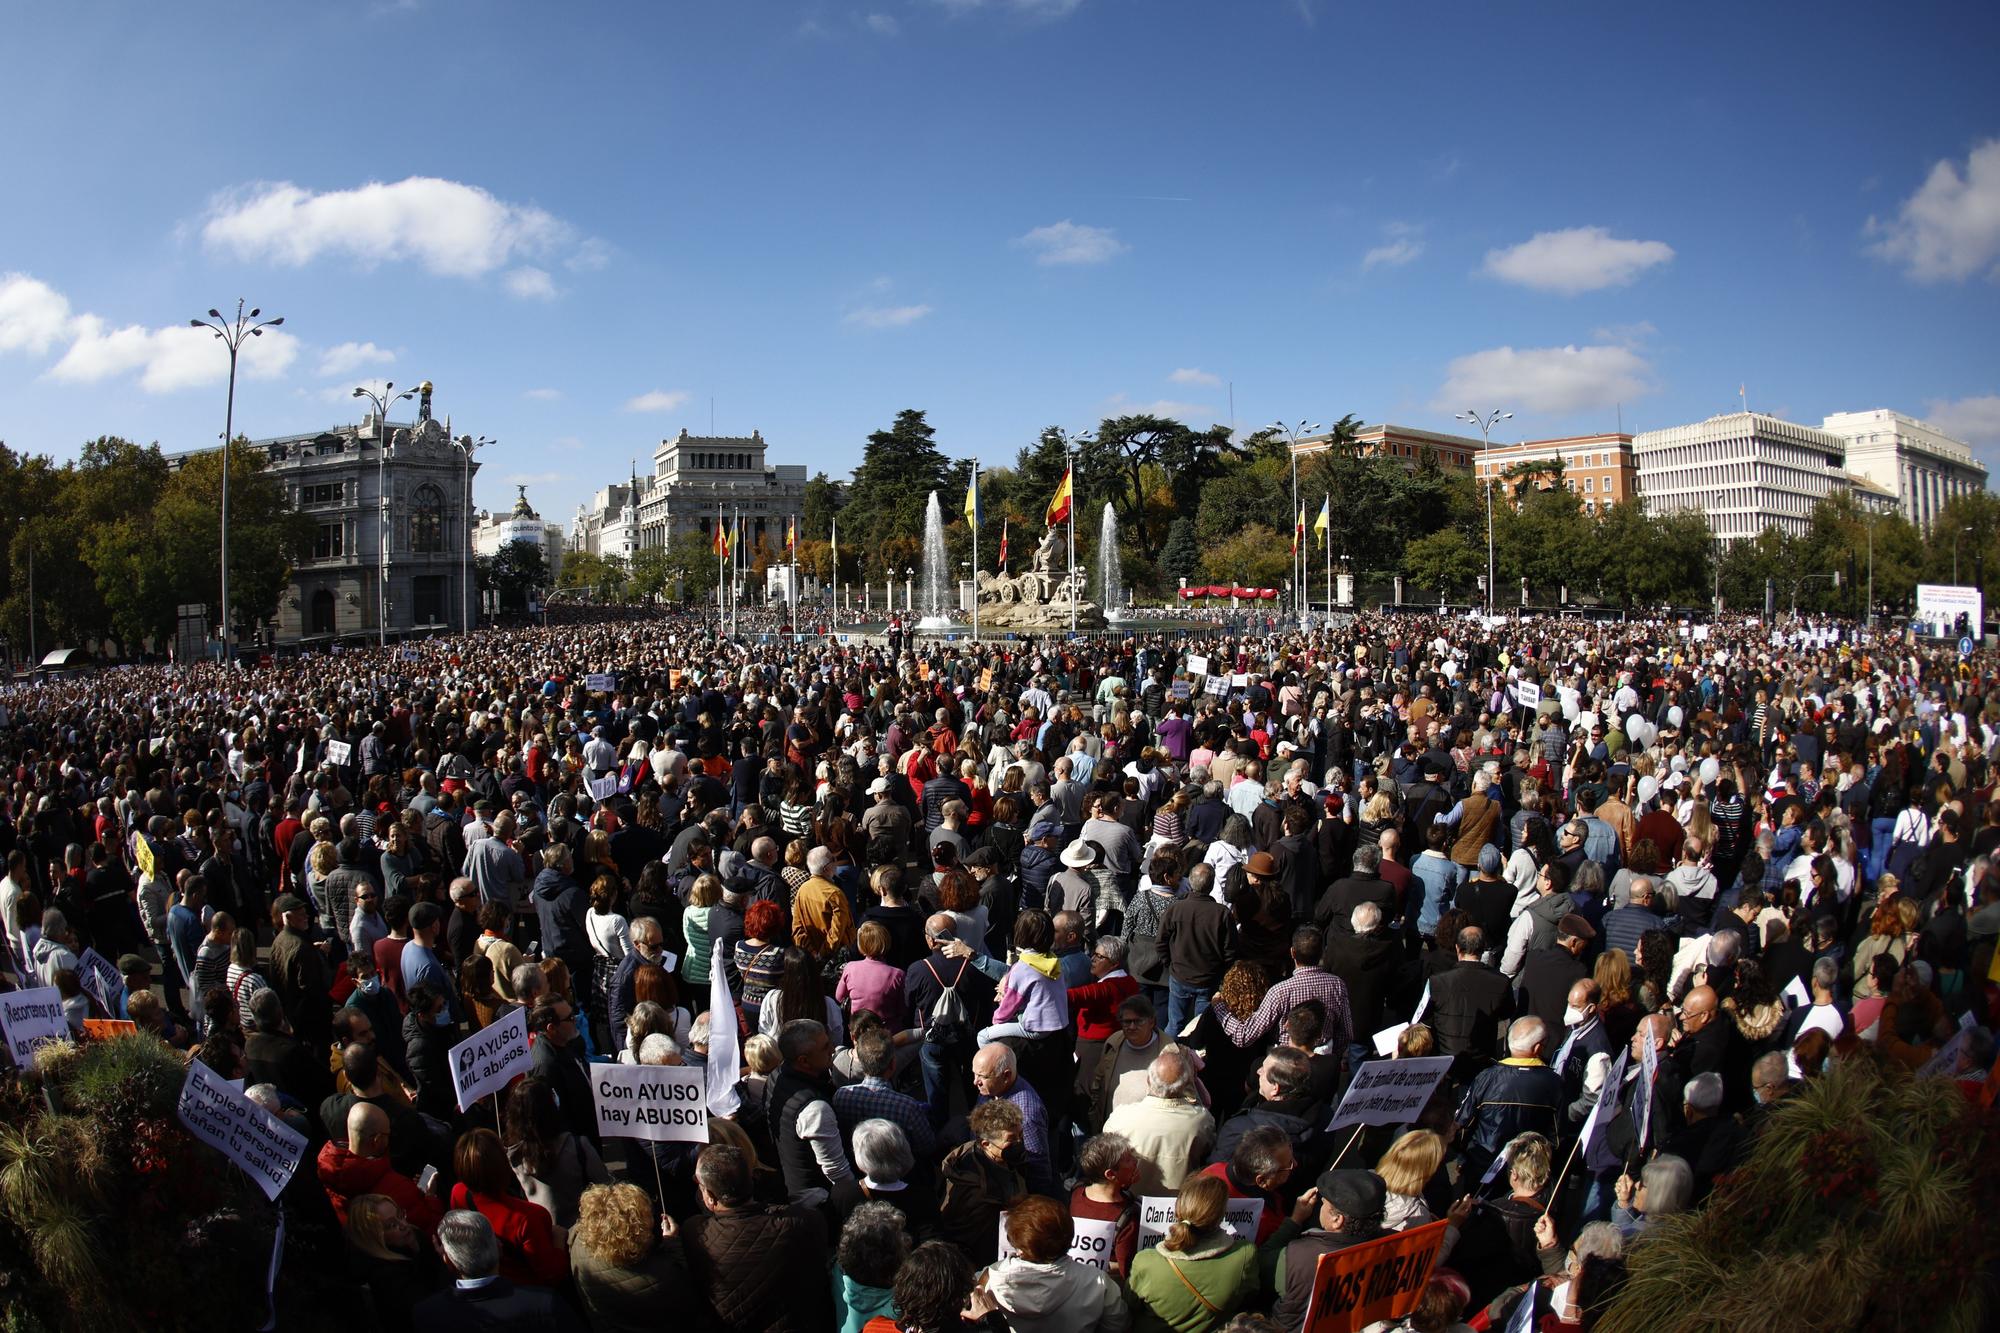 Manifestación en Madrid en defensa de la sanidad pública